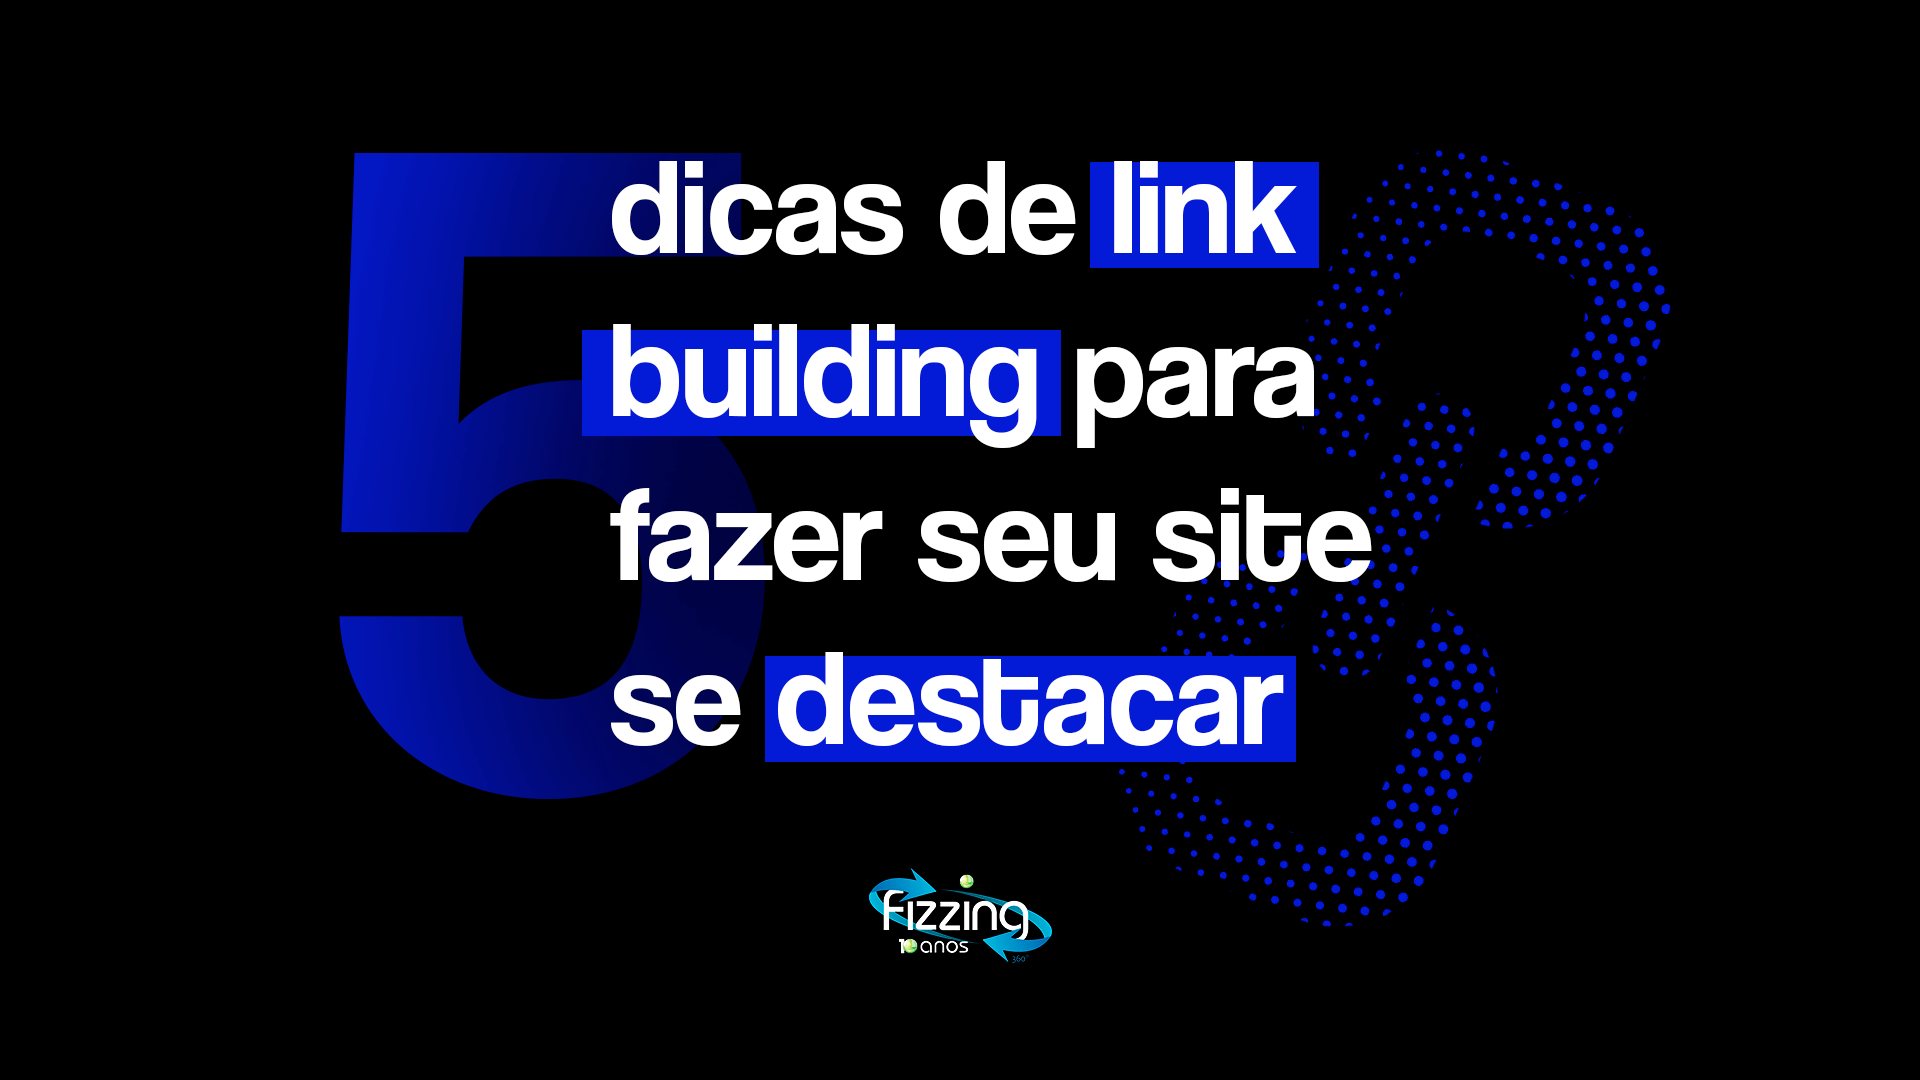 Fundo preto, com elementos azuis e o seguinte texto: "5 dicas de link building para fazer seu site se destacar".